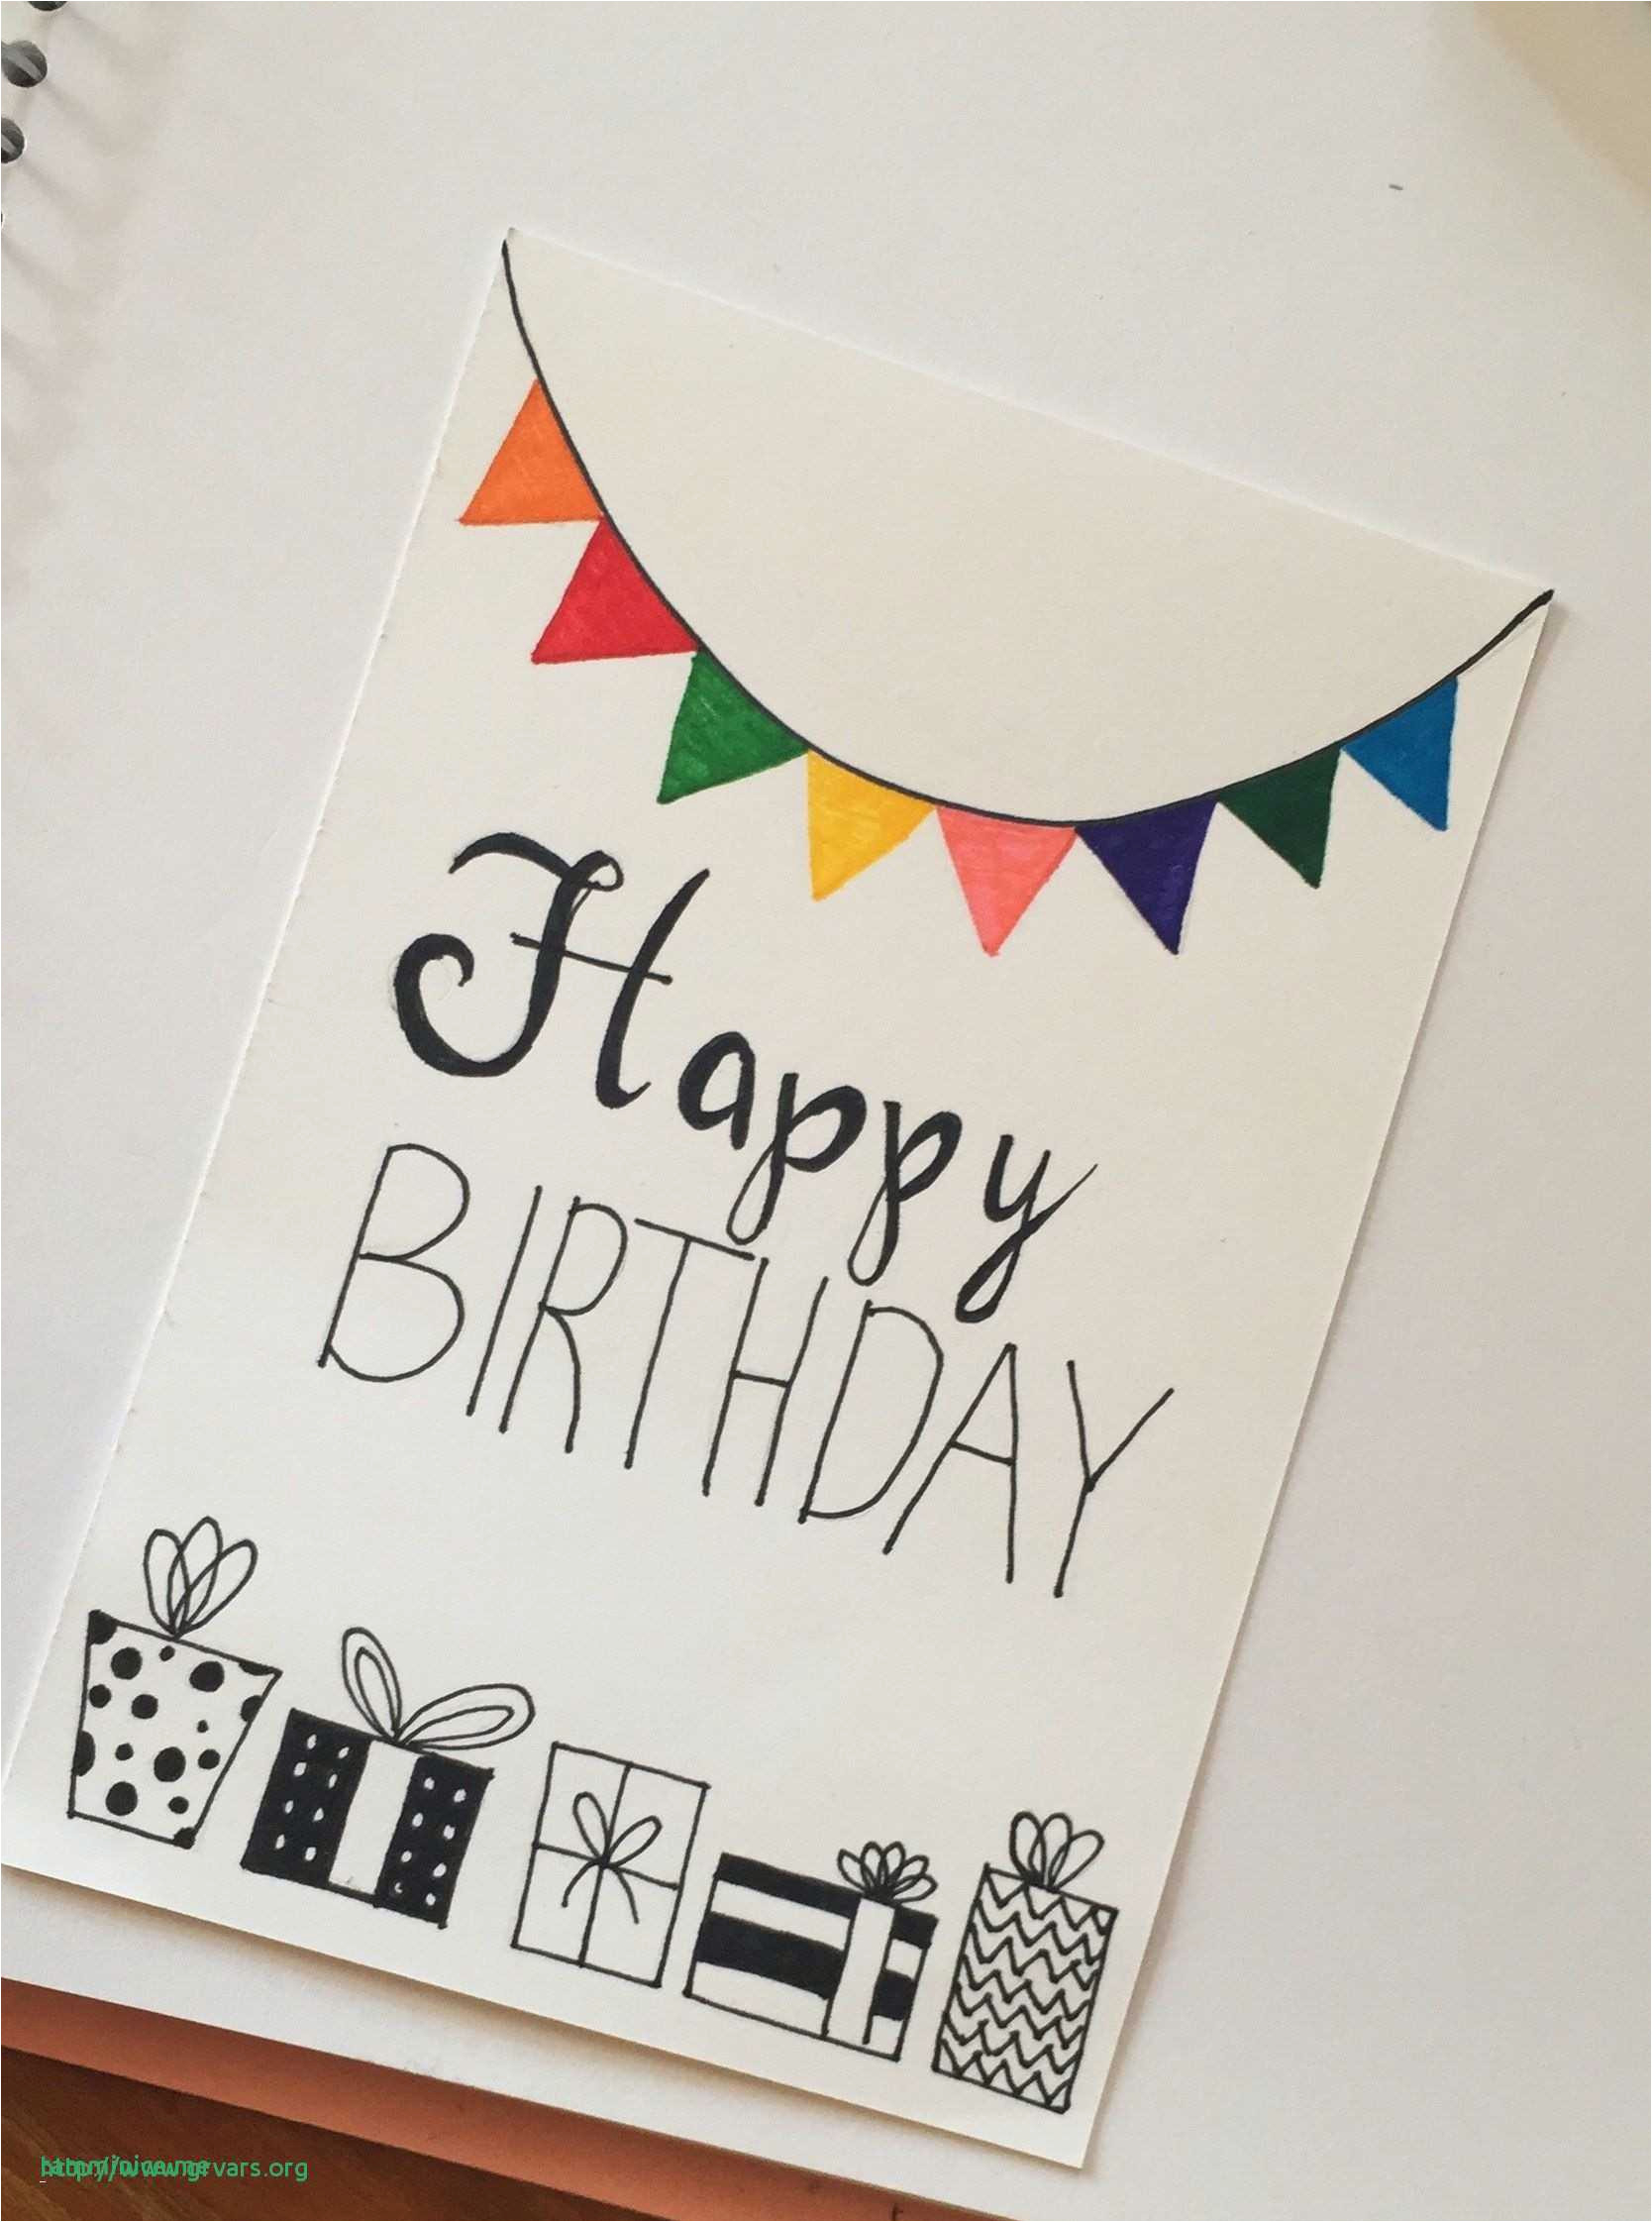 Birthday Card Designs Ideas Diy Birthday Card Design Ideas Simple Handmade Birthday Cards